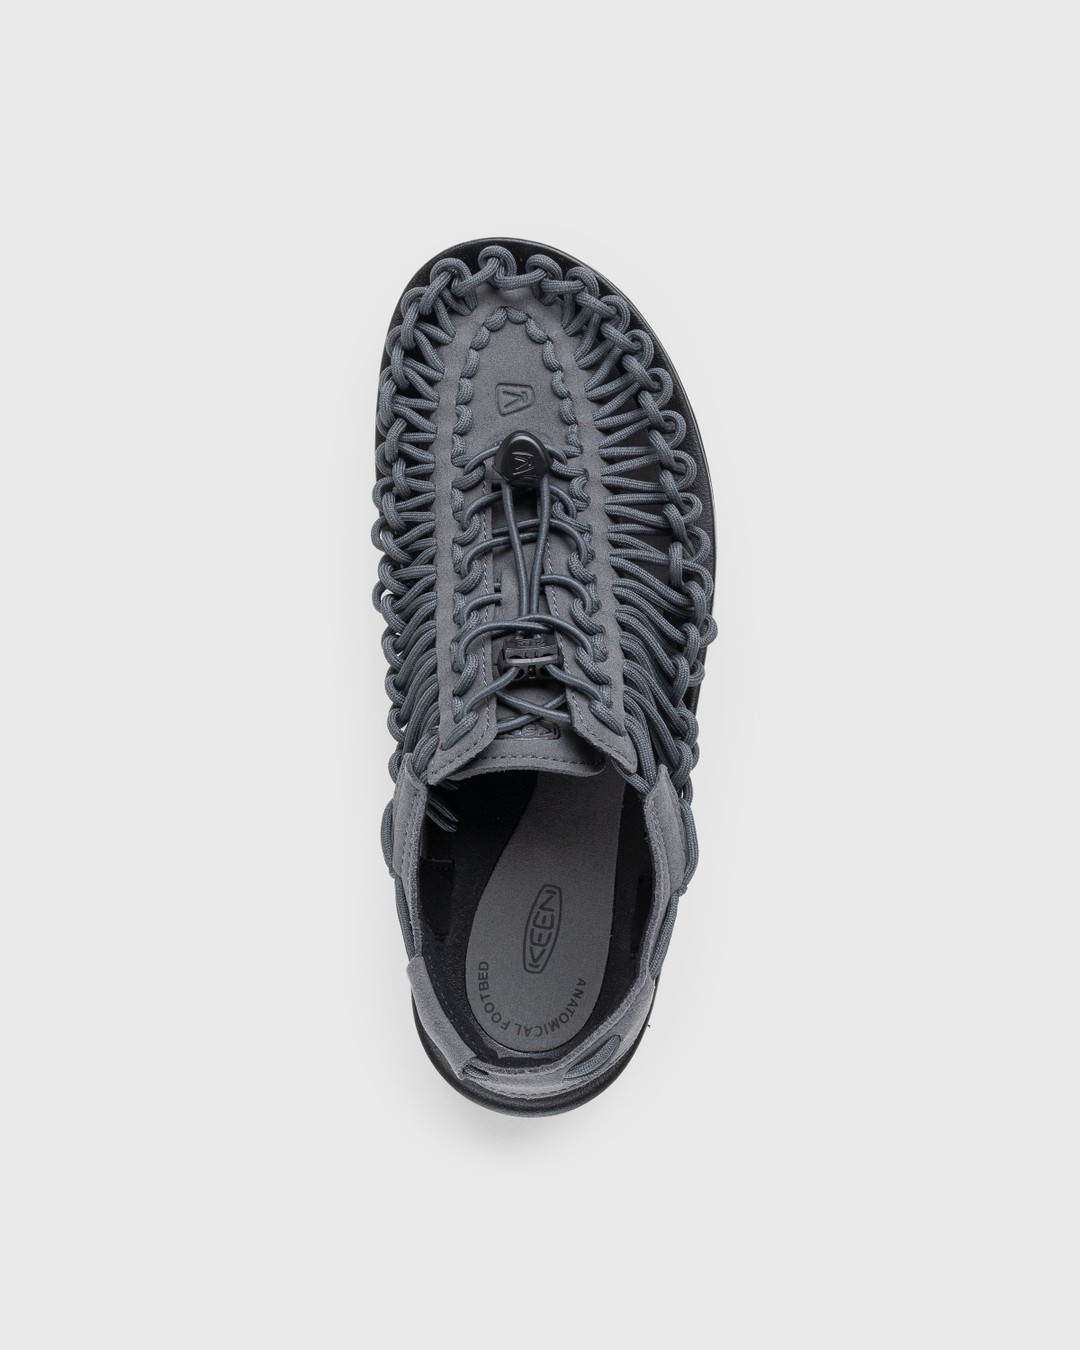 Keen – Uneek Magnet/Black - Sandals & Slides - Grey - Image 5